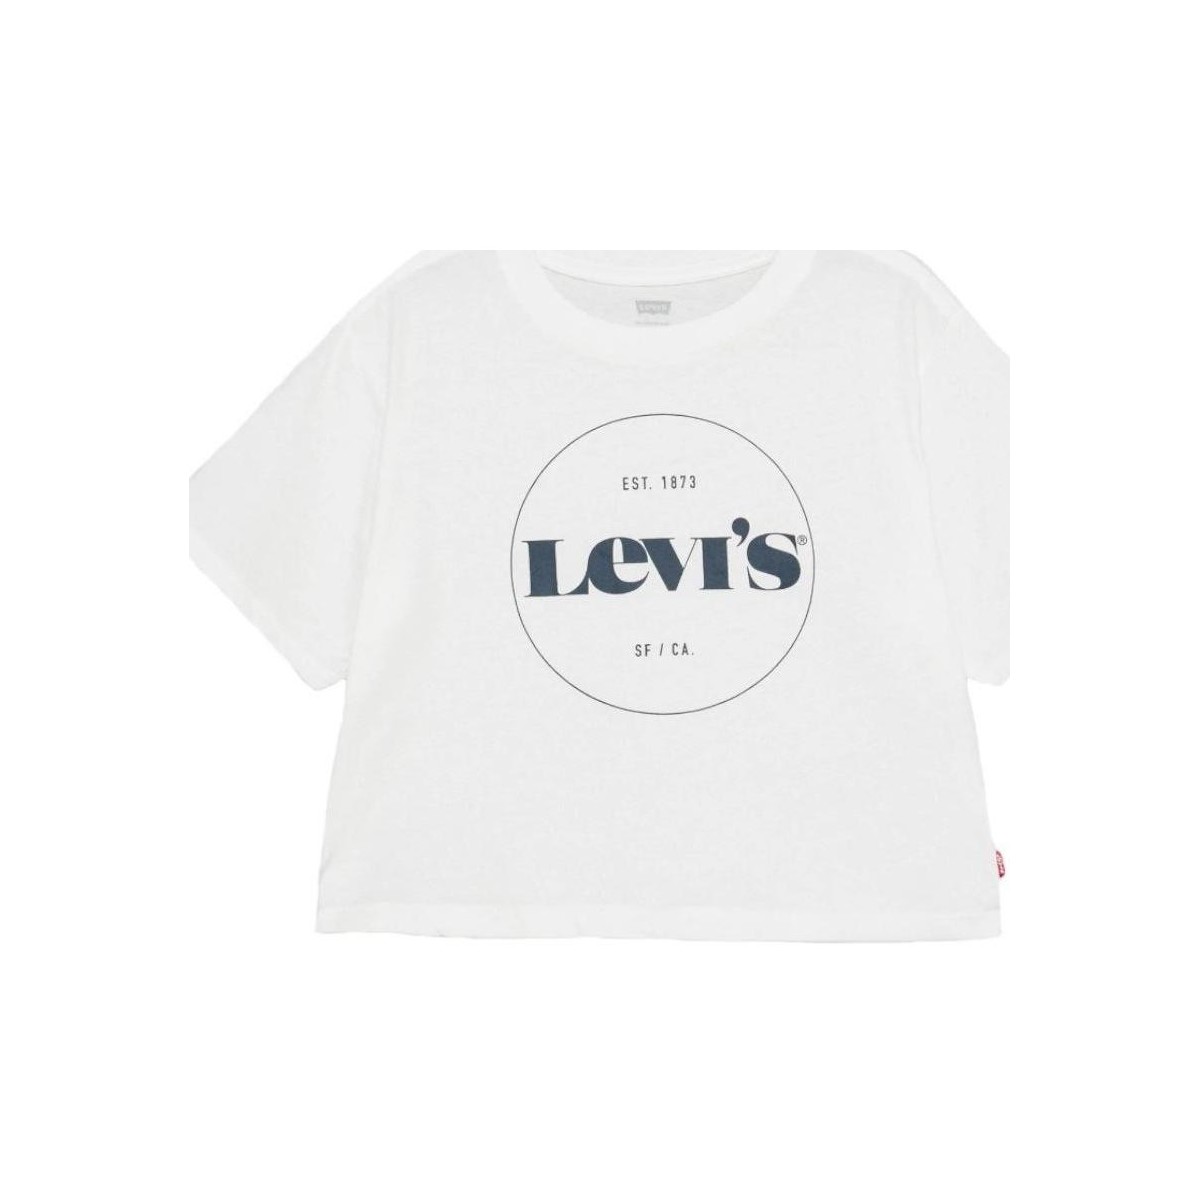 Vêtements Fille T-shirts manches courtes Levi's  Blanc